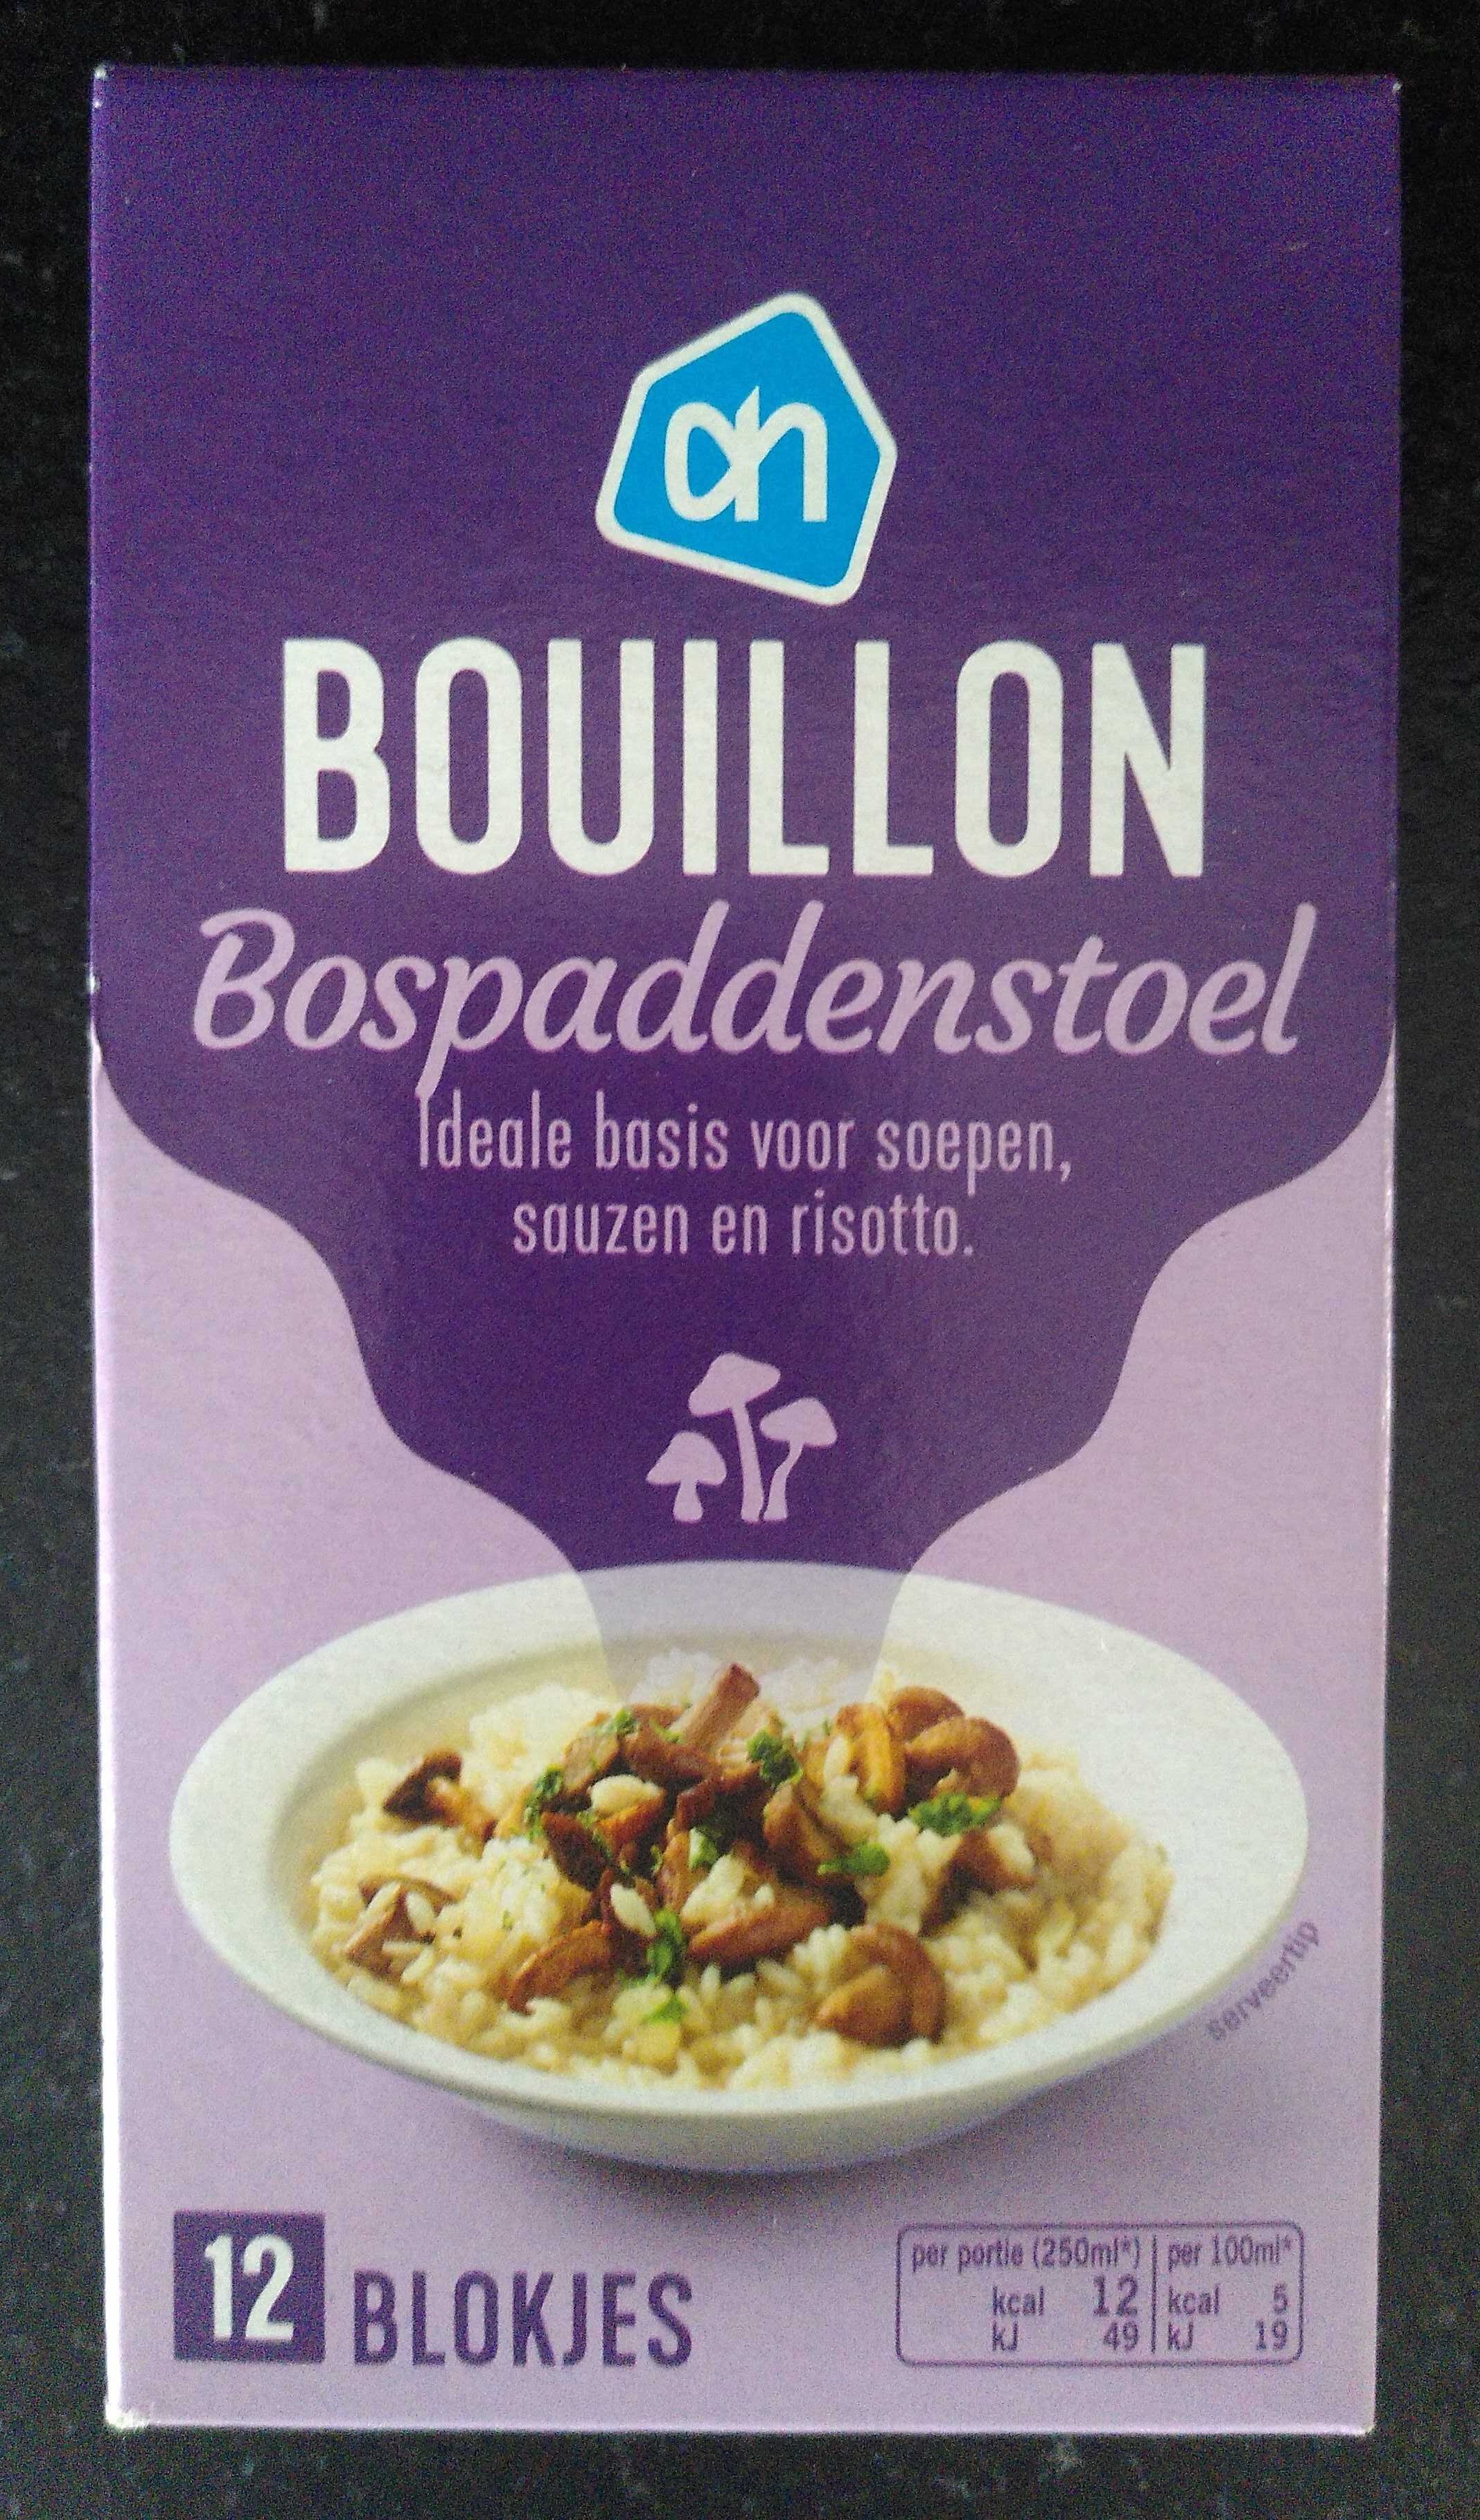 Bouillon Bospaddenstoel - Produit - nl